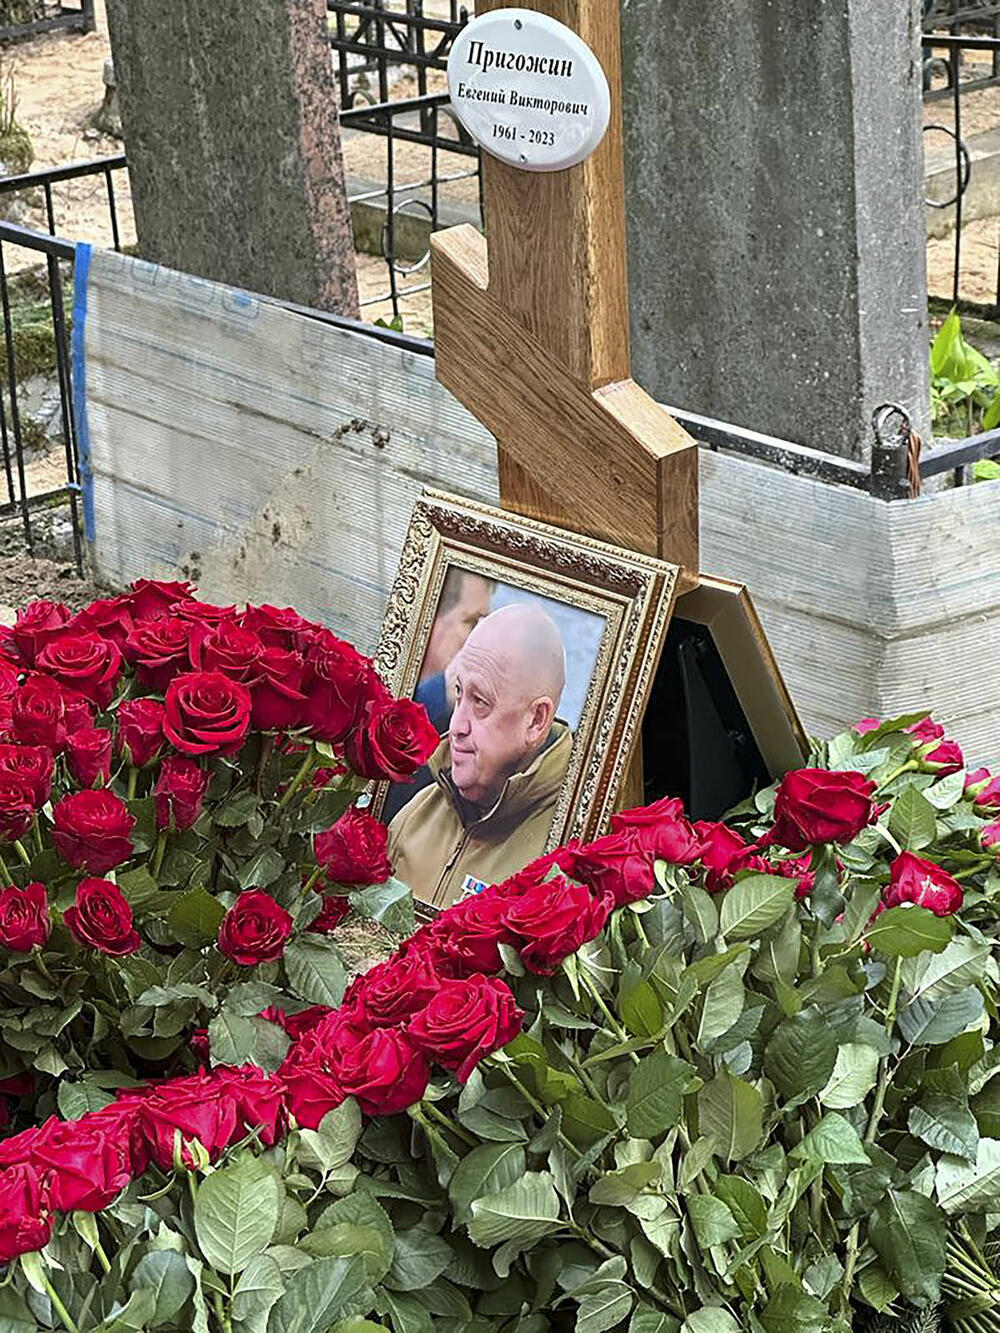 Pogreb je bil skromen, varnost pa ne – Prigožin pokopan na zasebnem pogrebu na pokopališču Porokhovskoe, na robu Sankt Peterburga, poleg njegovega pokojnega očeta